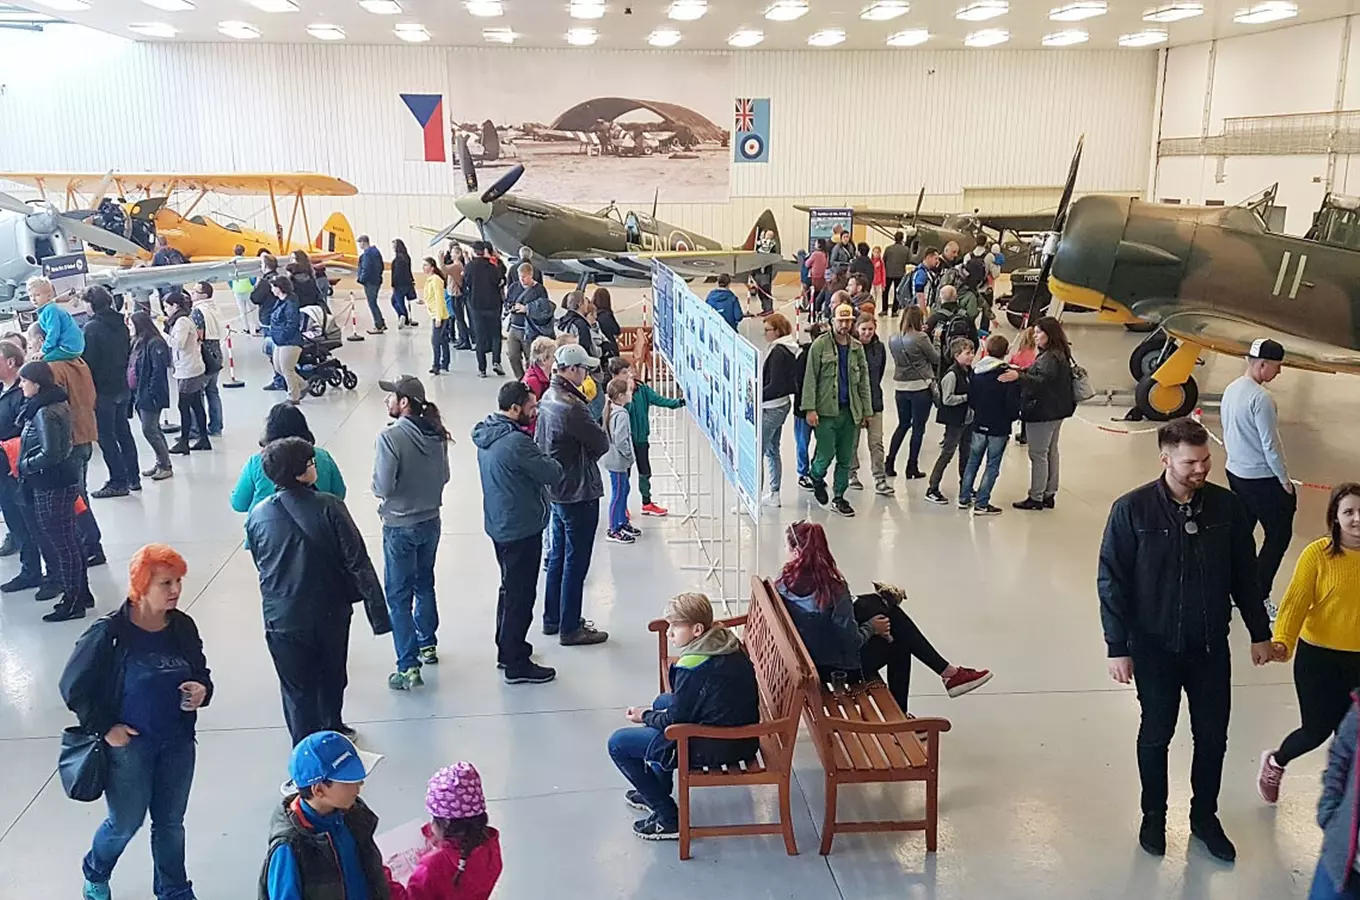 Dny otevřeného hangáru - Muzeum Hangár 3 v Plzni Líních